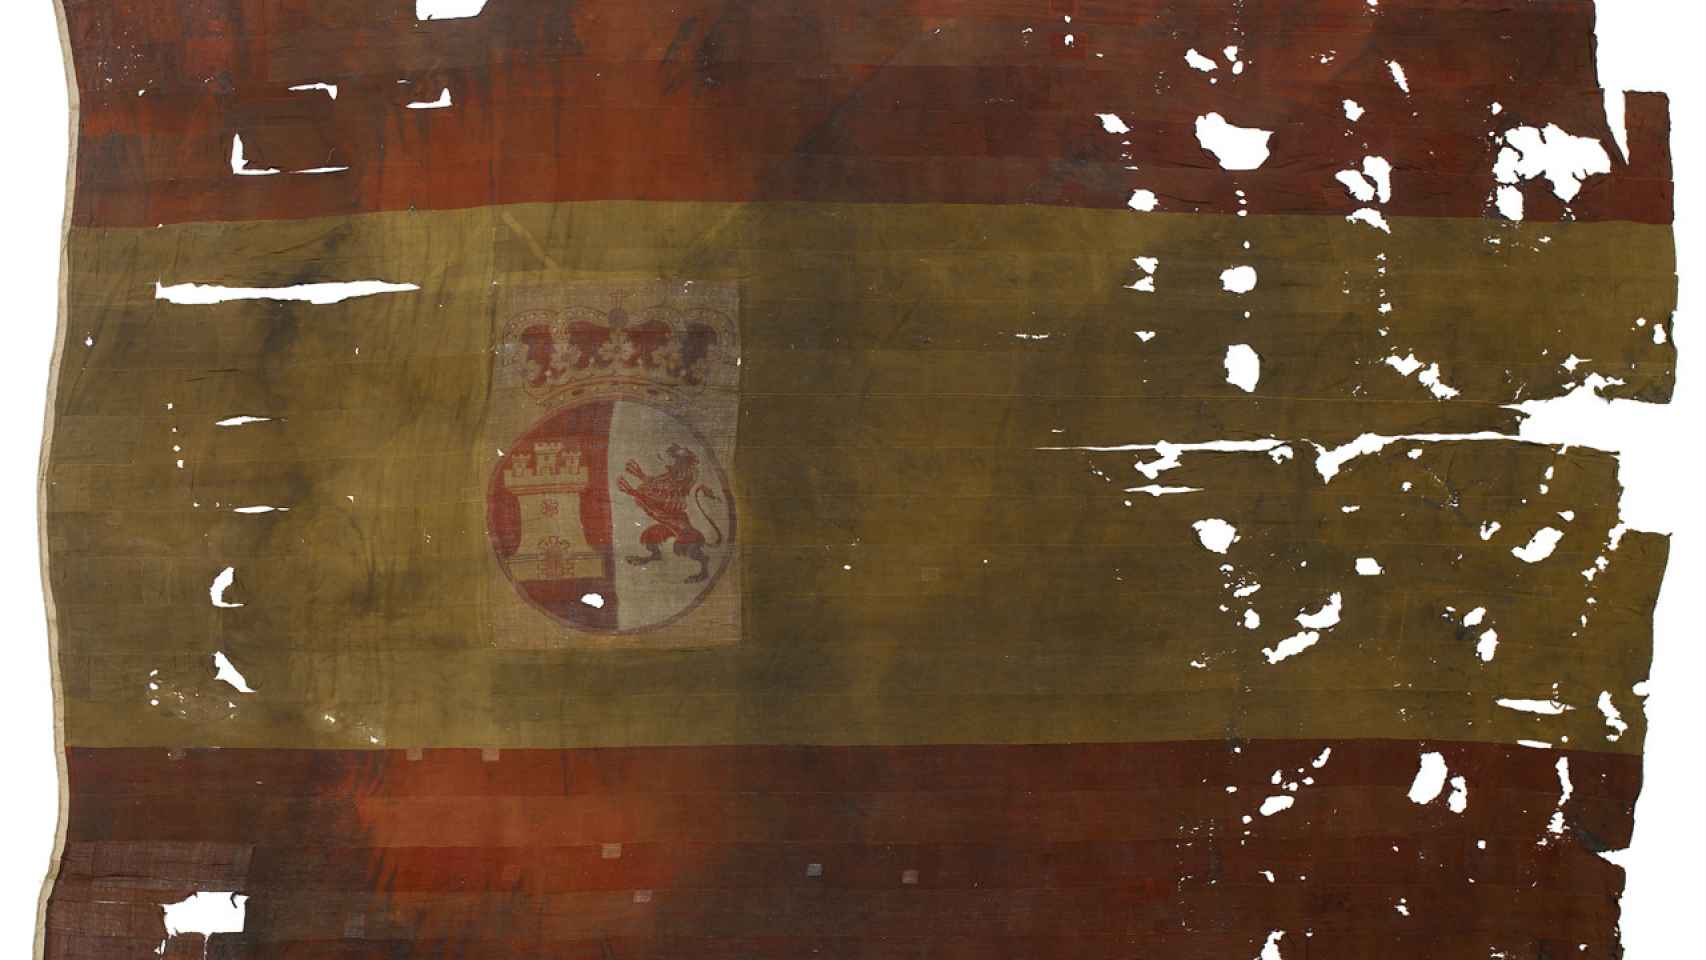 La bandera del 'San Ildefonso' capturada por los ingleses.